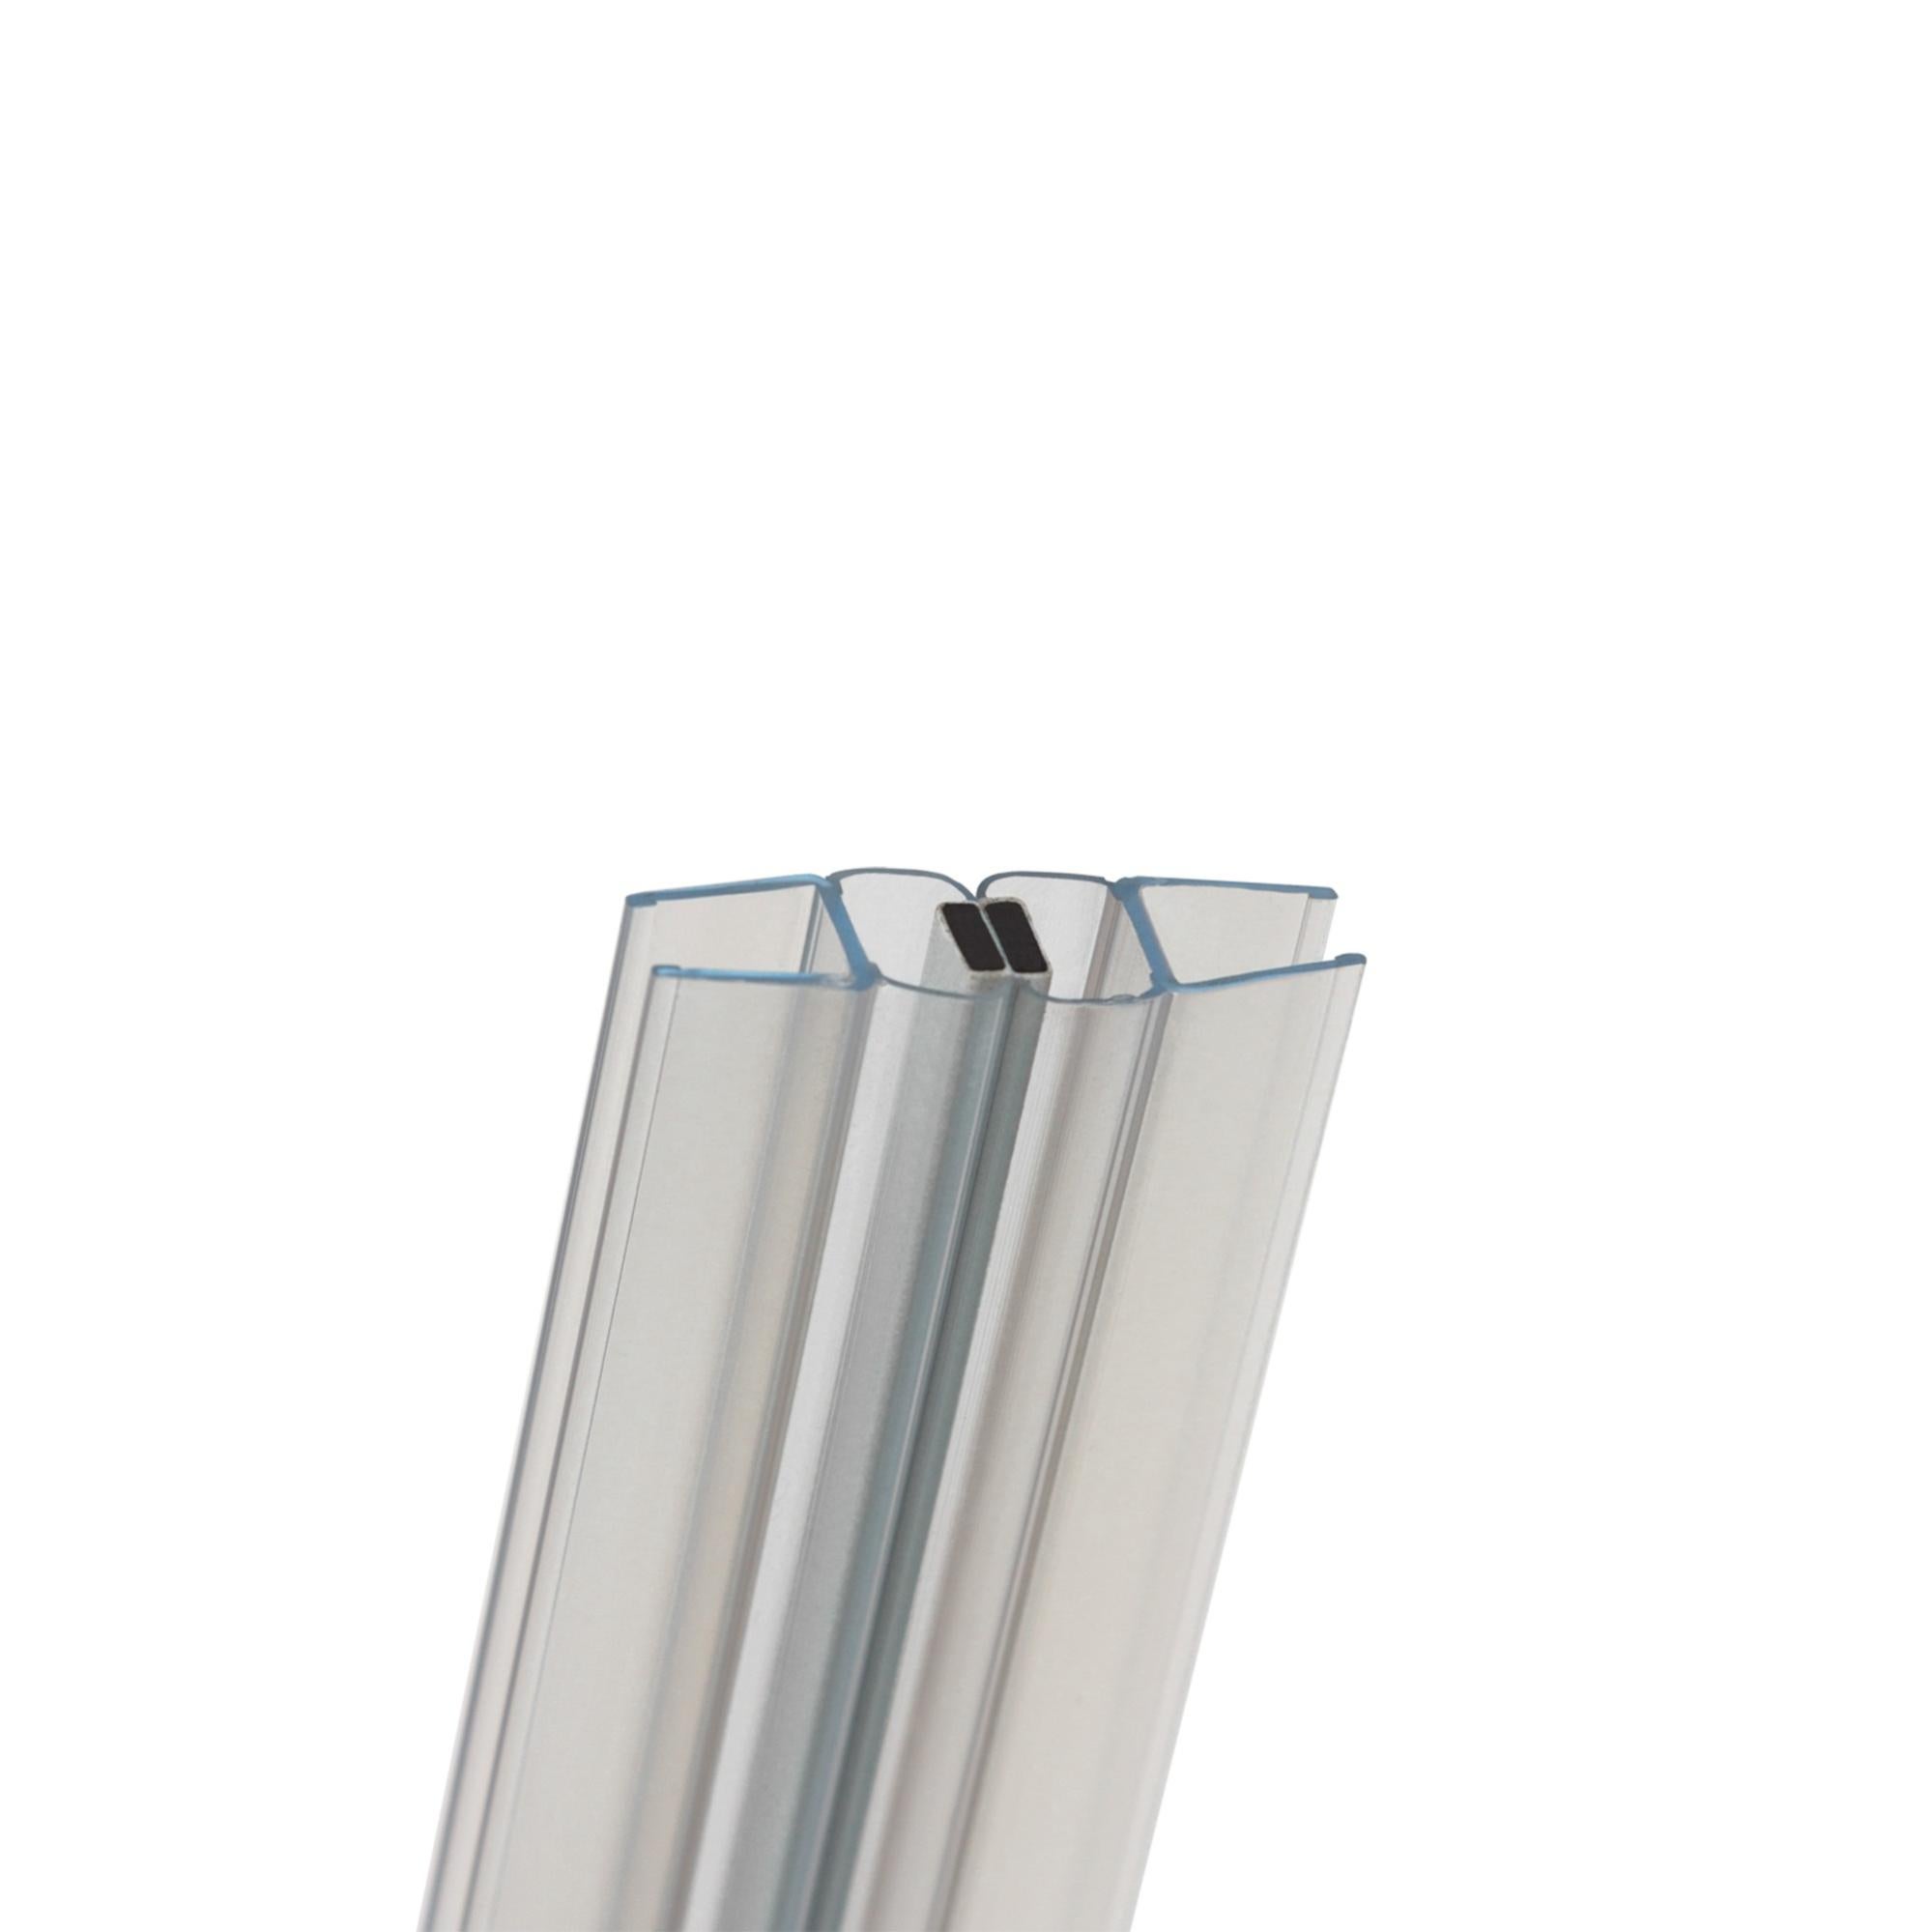 Joint magnétique d'angle pour porte de douche 200 cm 5/6 mm, 925662, Salle de bains et WC